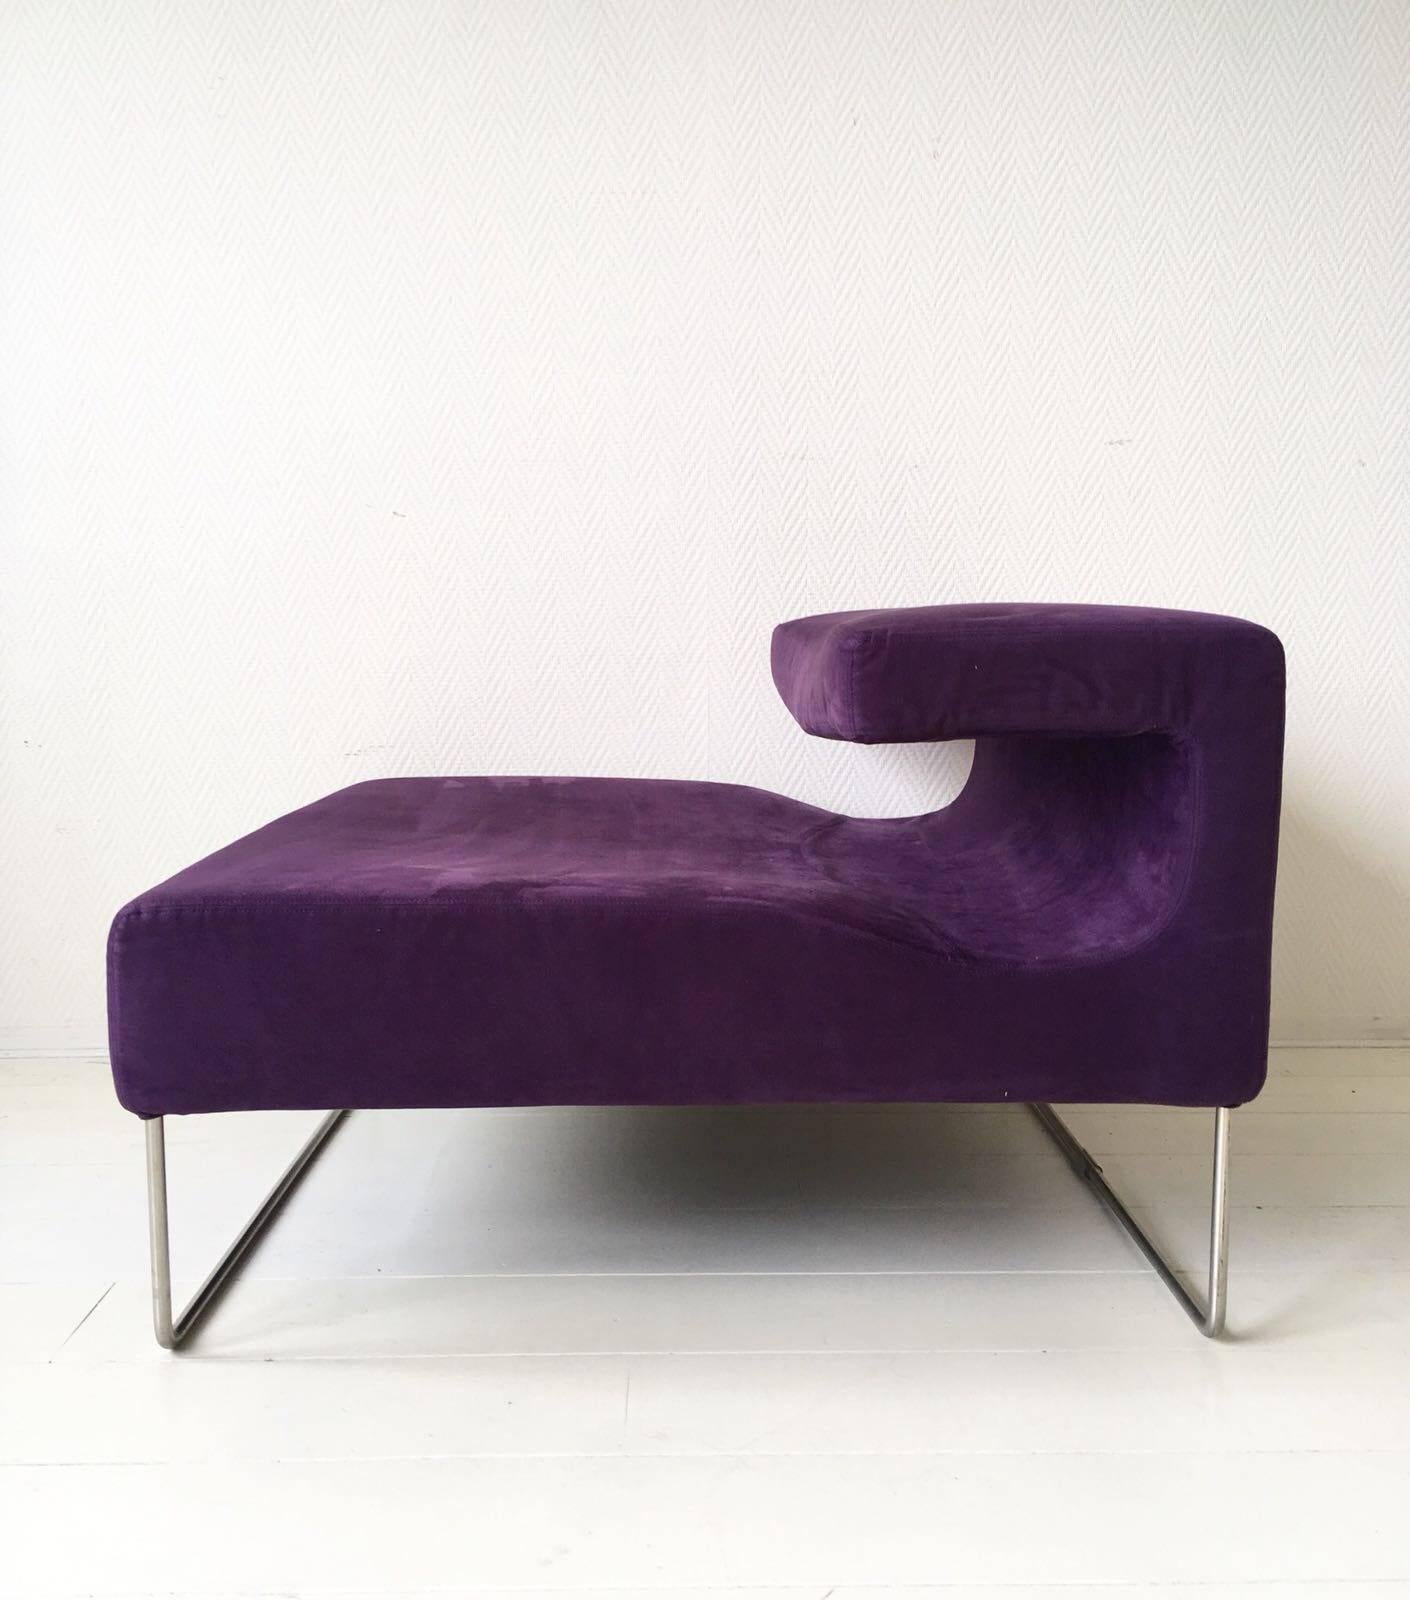 Diese beiden futuristischen und minimalistischen Stühle bilden zusammen ein Sofa; einer in rosa/violett (Eckmodell) und der andere lila/violett. Die beiden Farben harmonieren perfekt, wenn sie zusammen platziert werden, aber wenn sie getrennt in